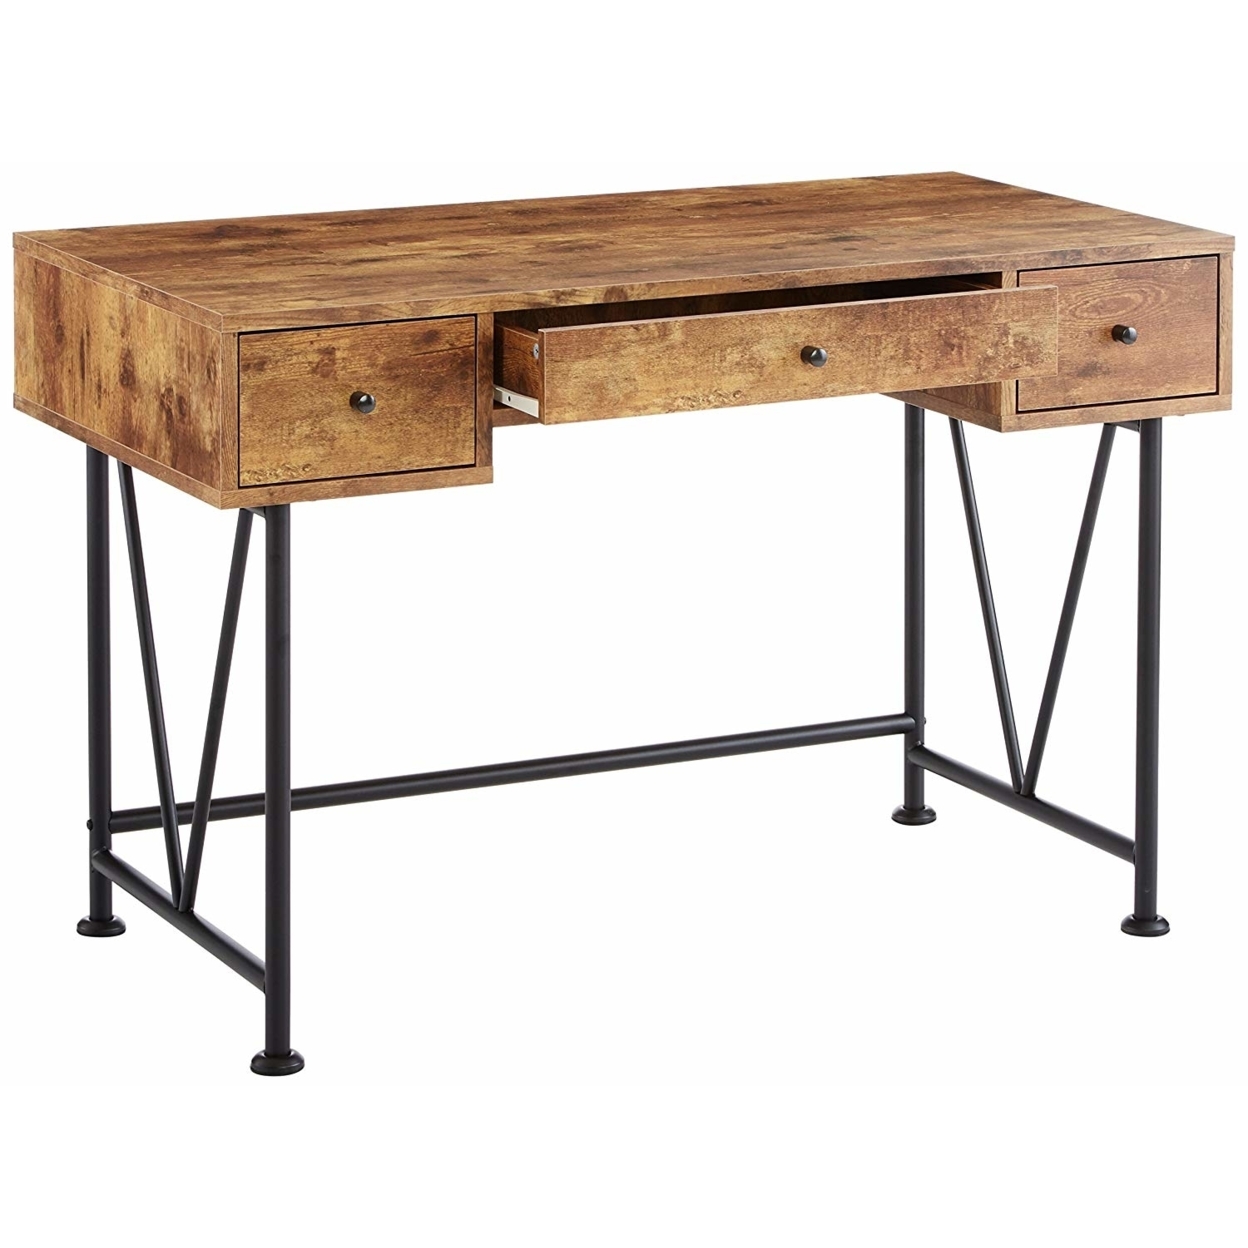 48 Inch Chic Wood Writing Desk 3 Drawer, Rustic, Metal Base, Antique Brown- Saltoro Sherpi